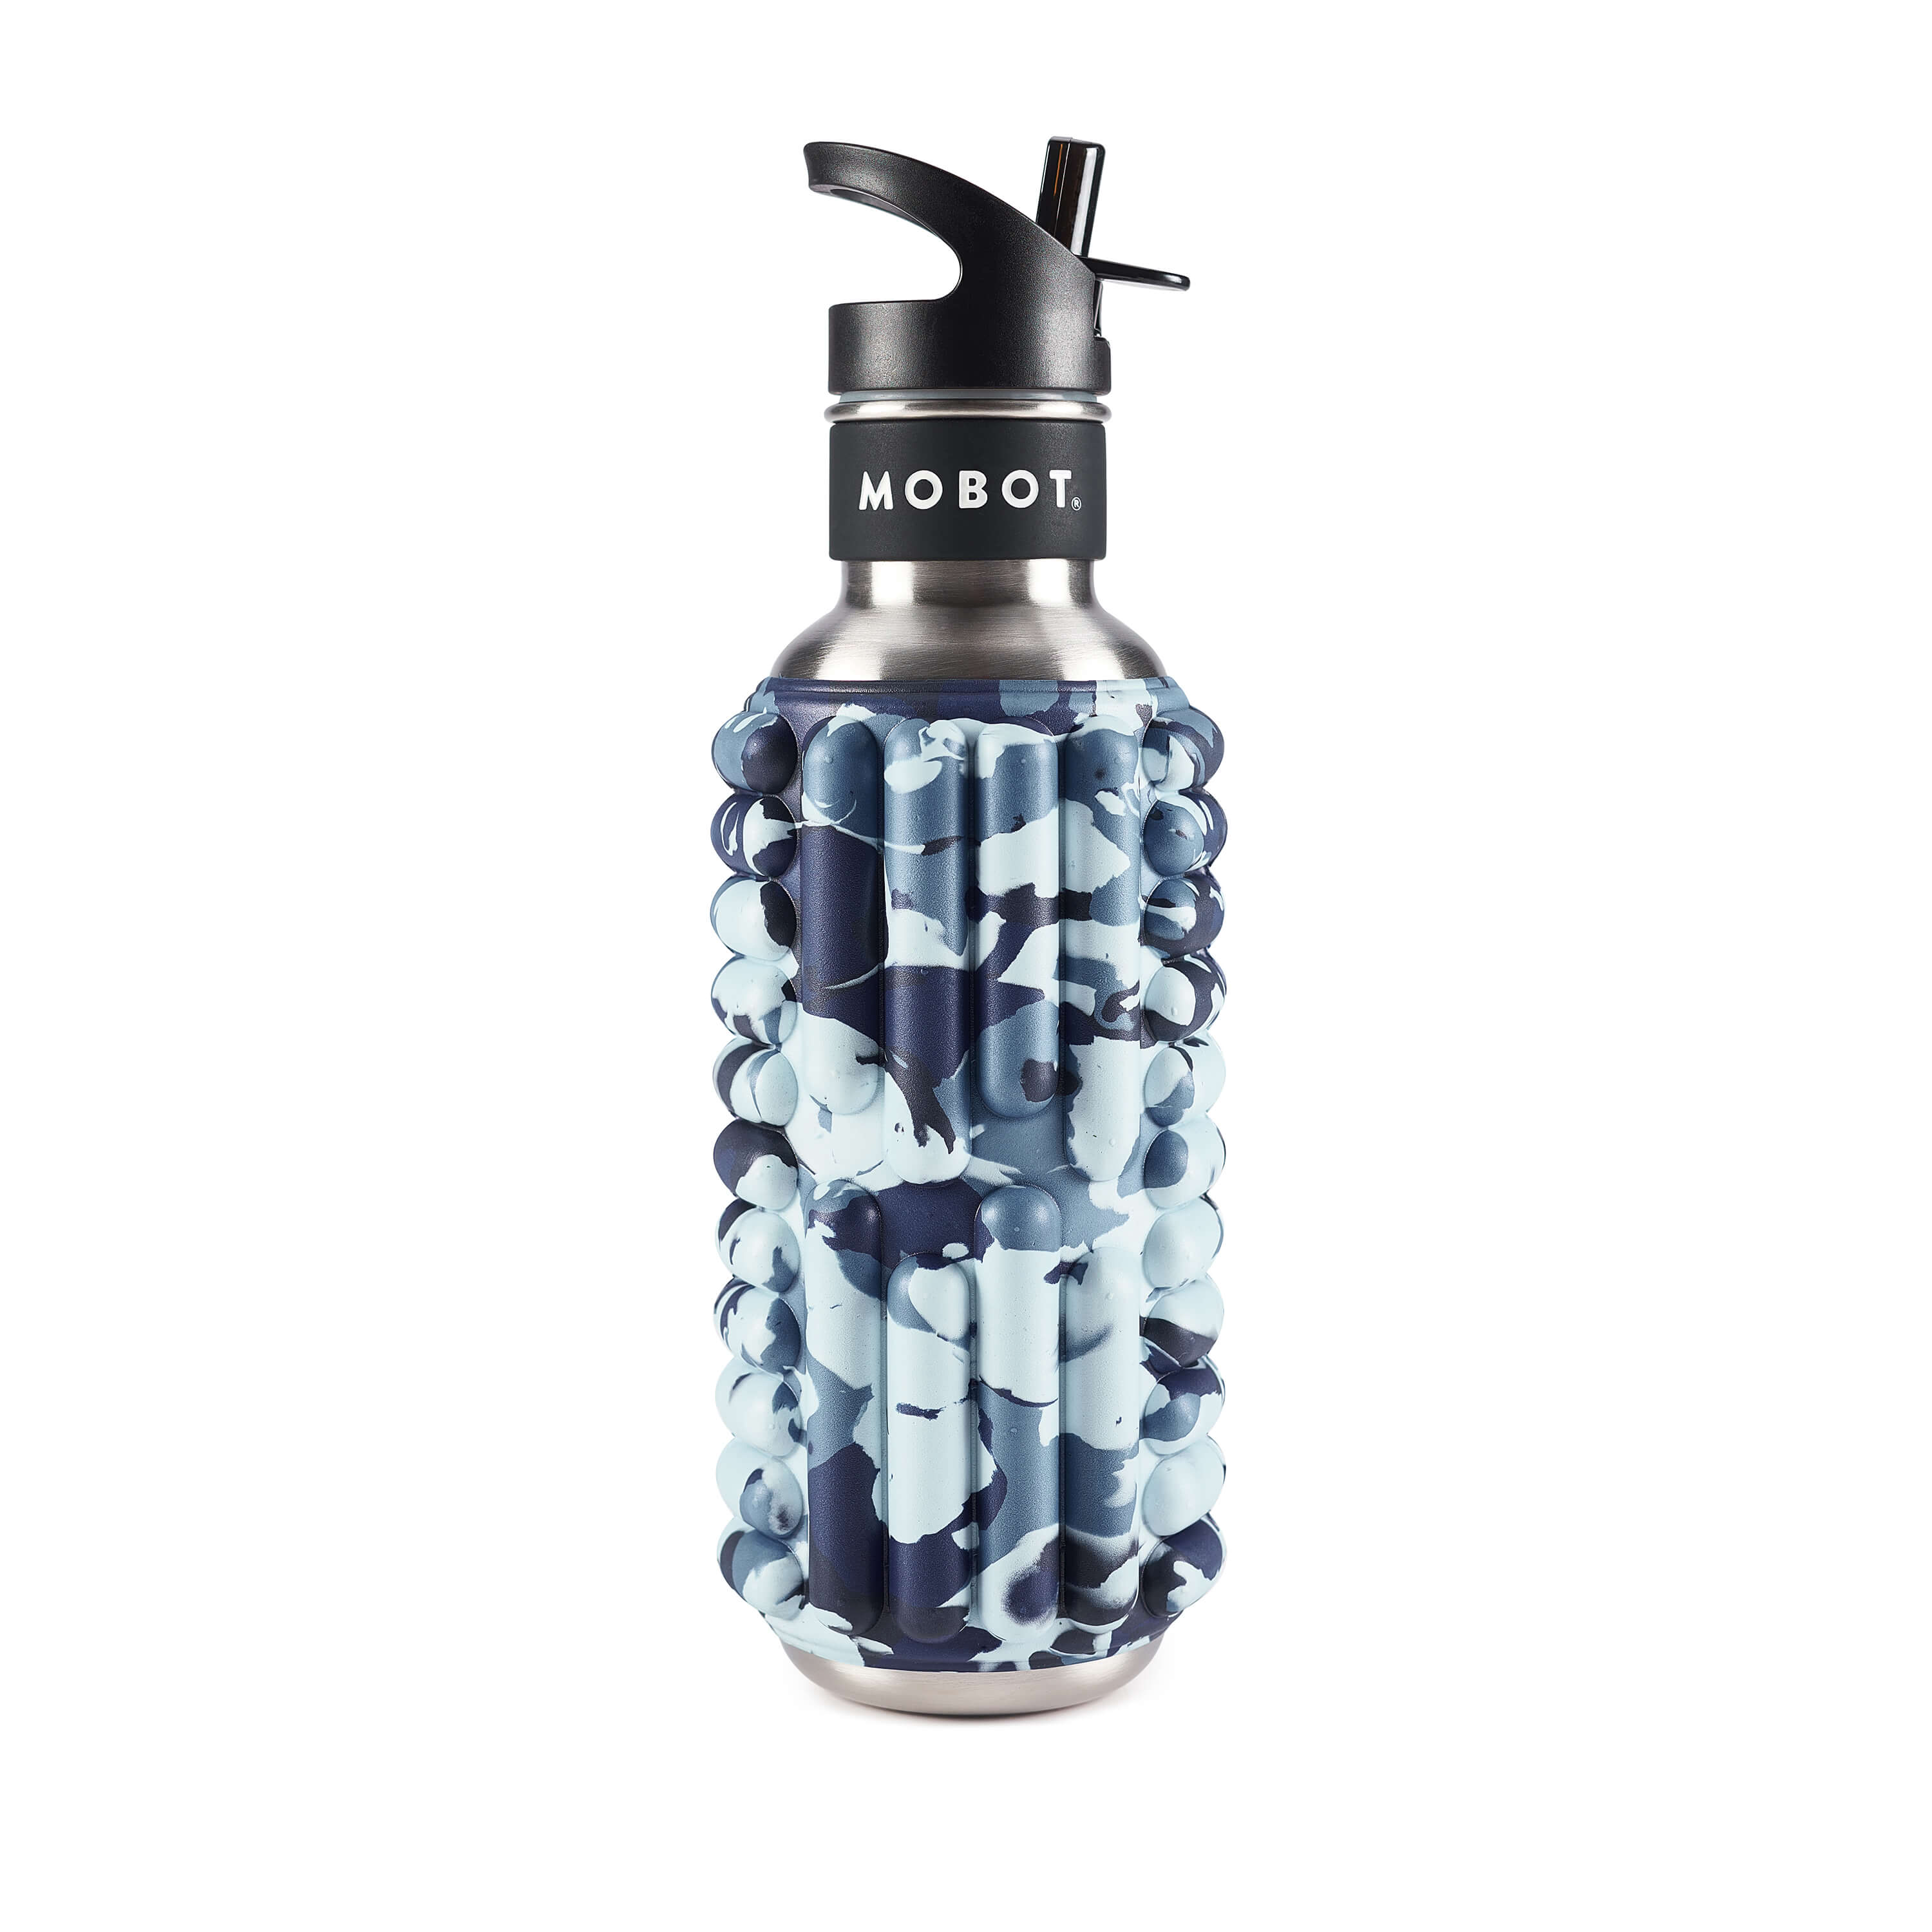 MOBOT Grace Foam Roller Water Bottle - 798.4ml